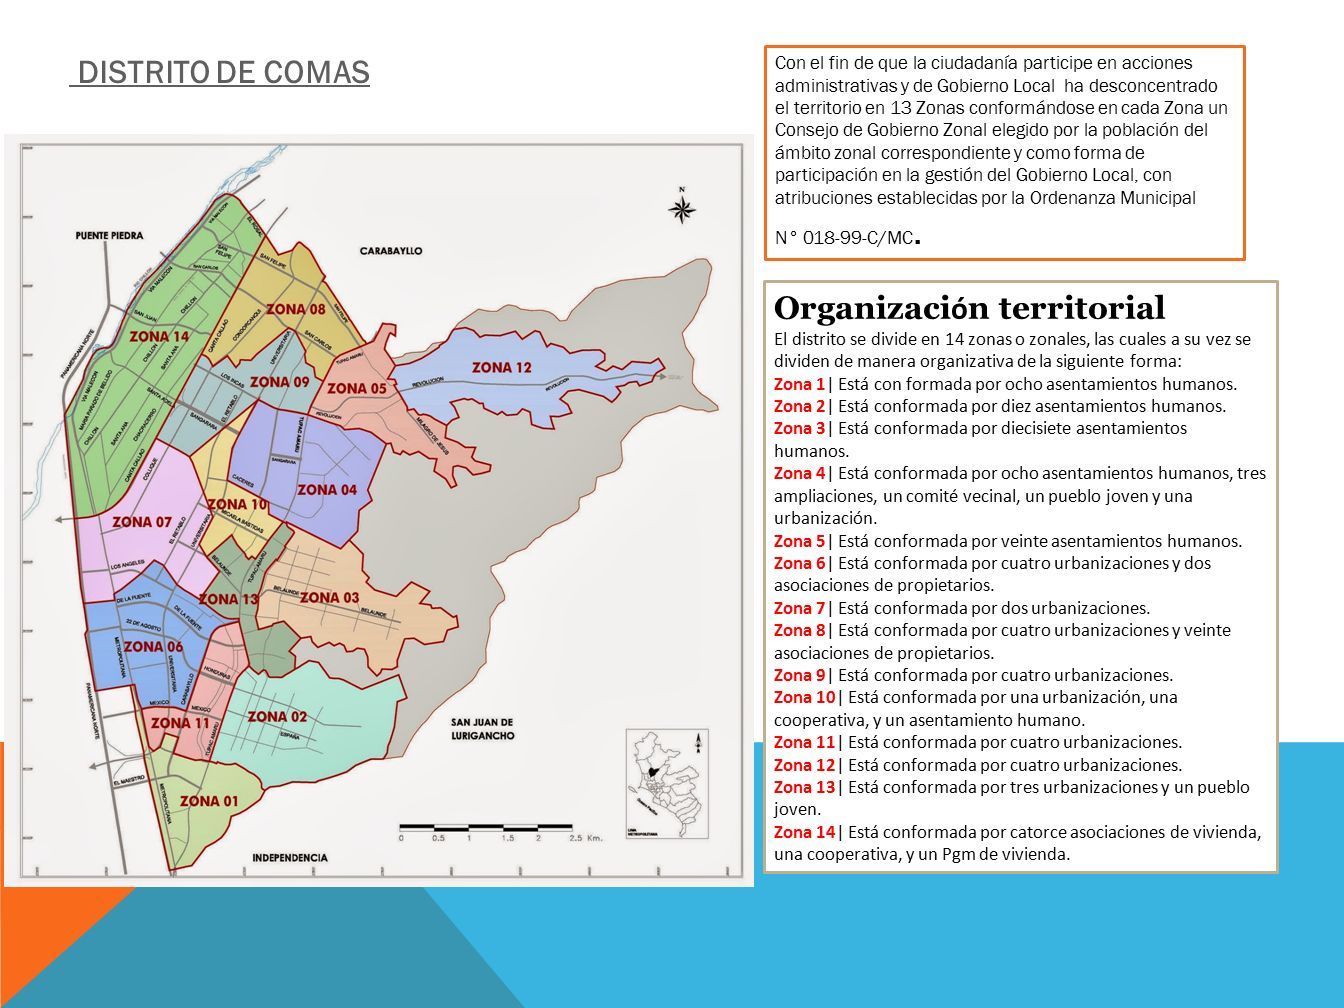 Organizaci ó n territorial El distrito se divide en 14 zonas o zonales, las cuales a su vez se dividen de manera organizativa de la siguiente forma: Zona 1| Está con formada por ocho asentamientos humanos.